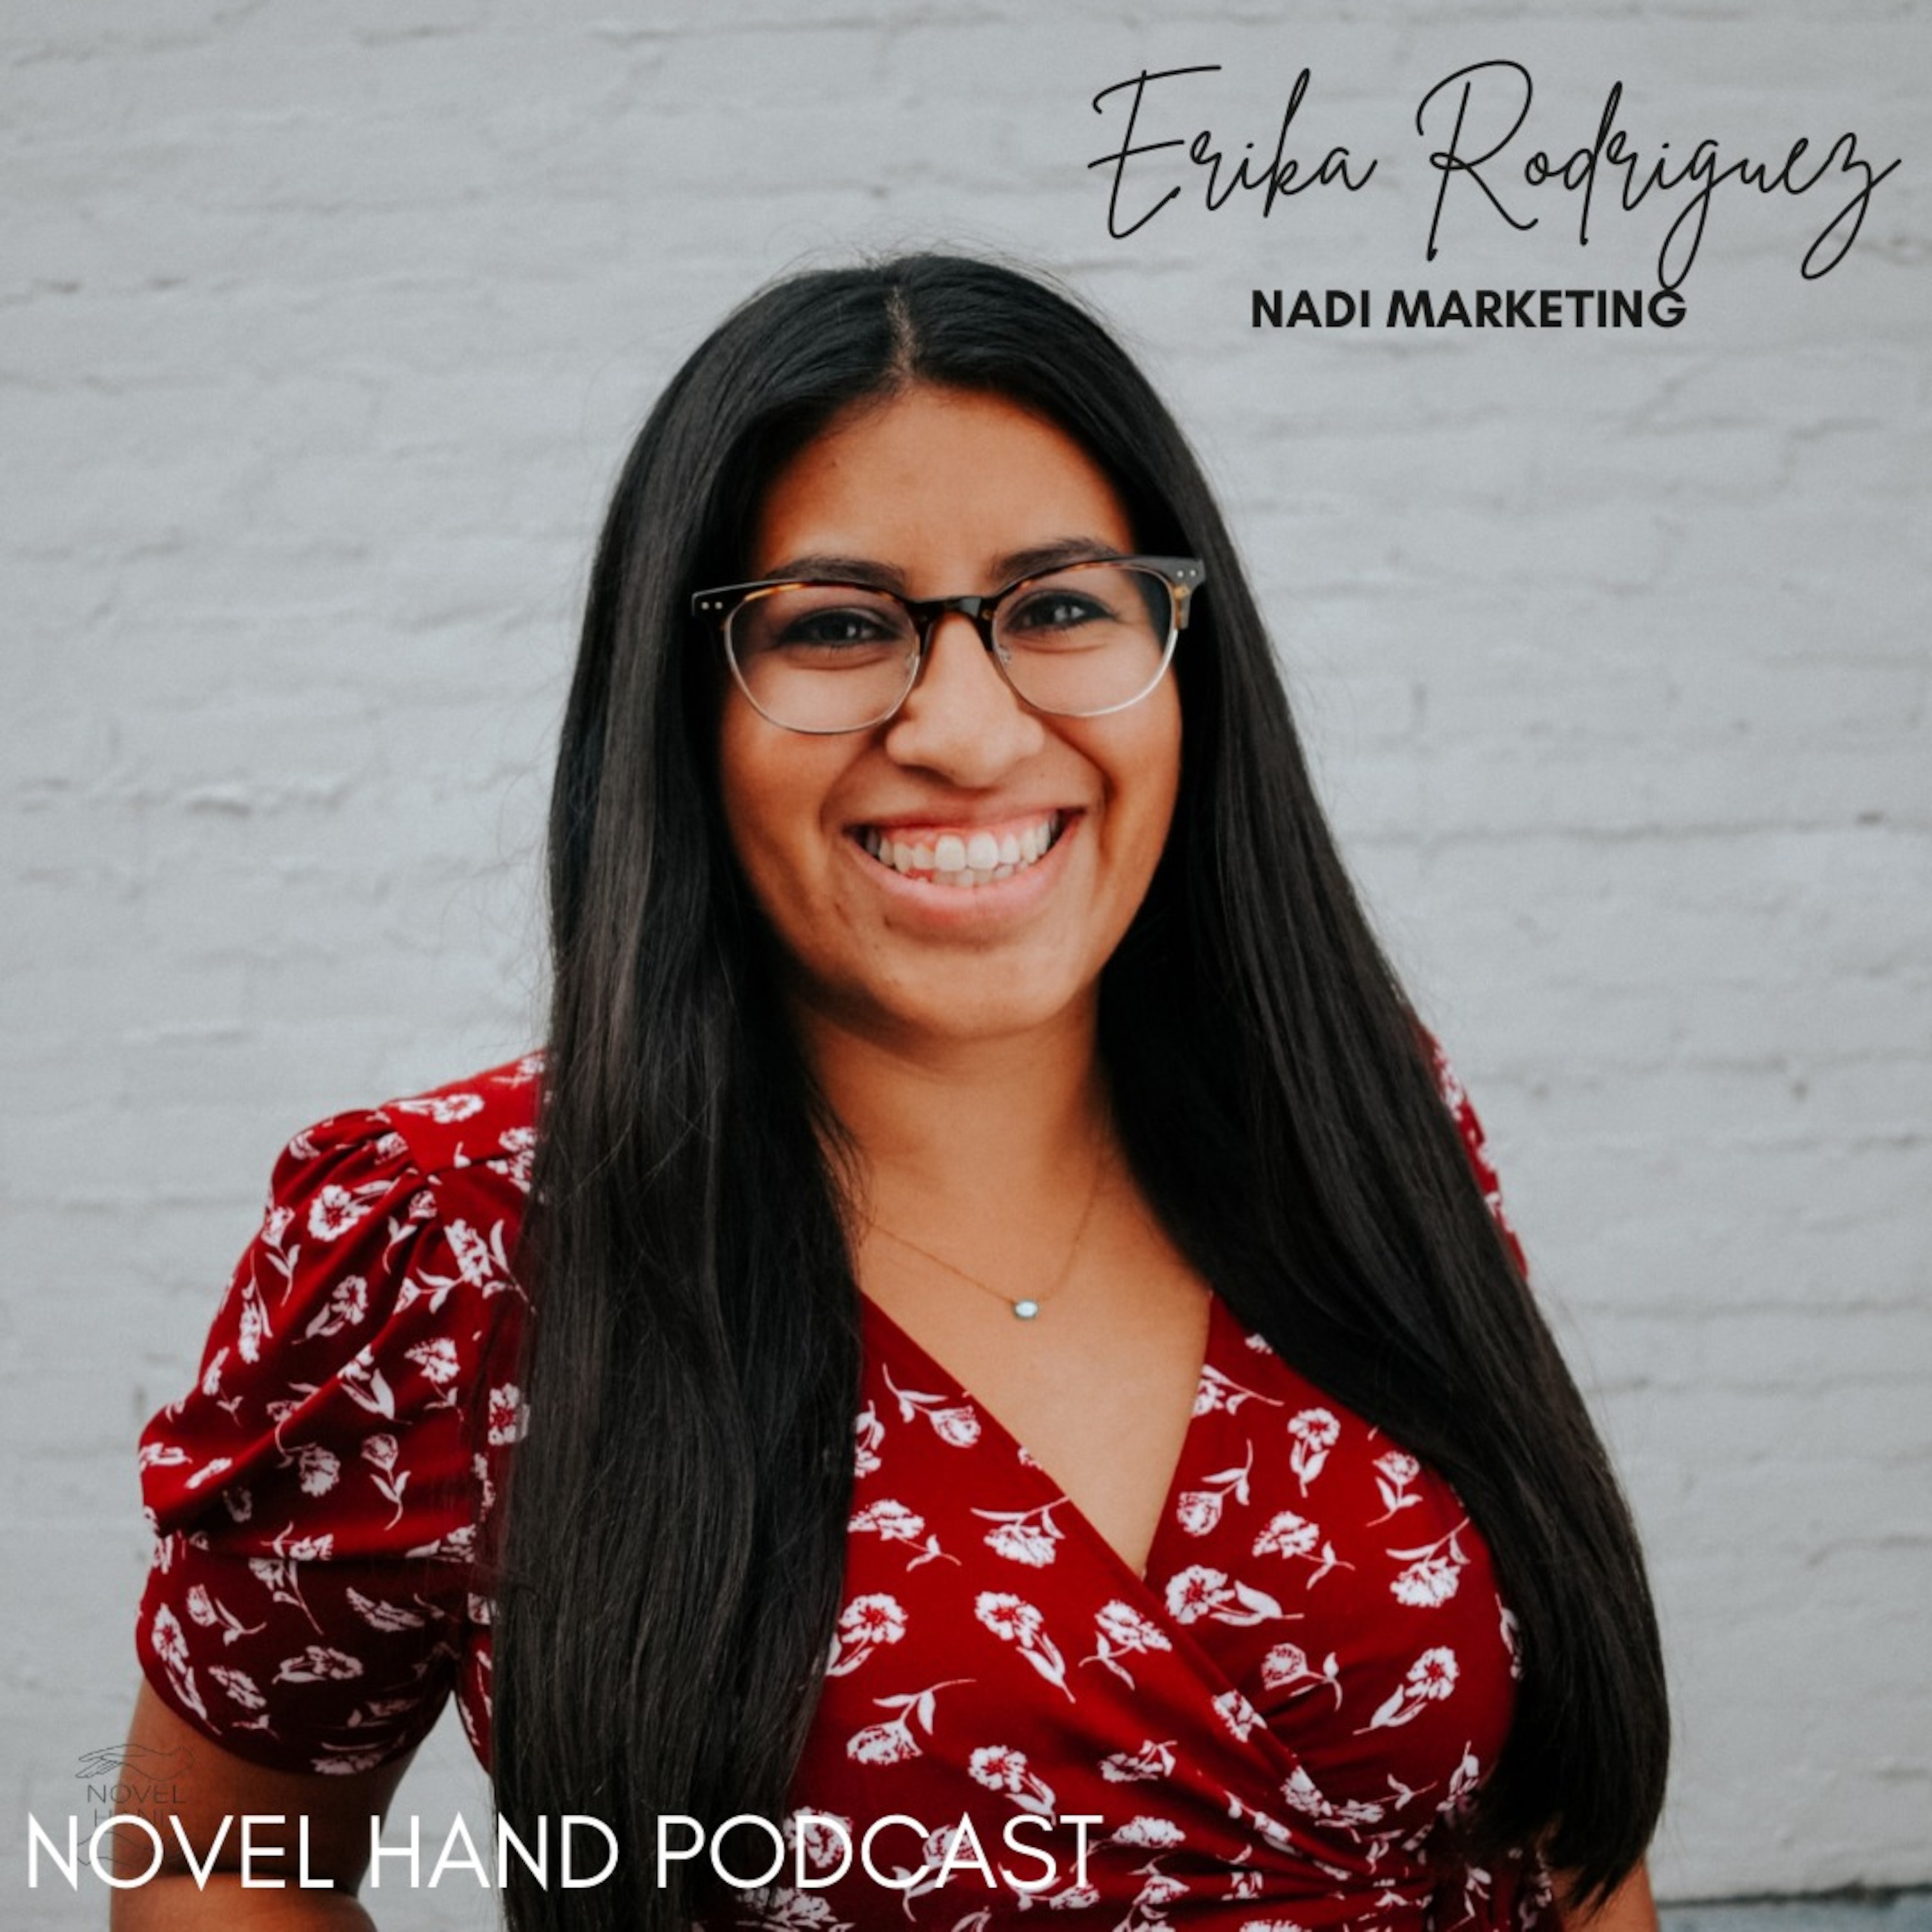 Ecopreneurship & Sustainable Brands with Erika Rodriguez of Nadi Marketing